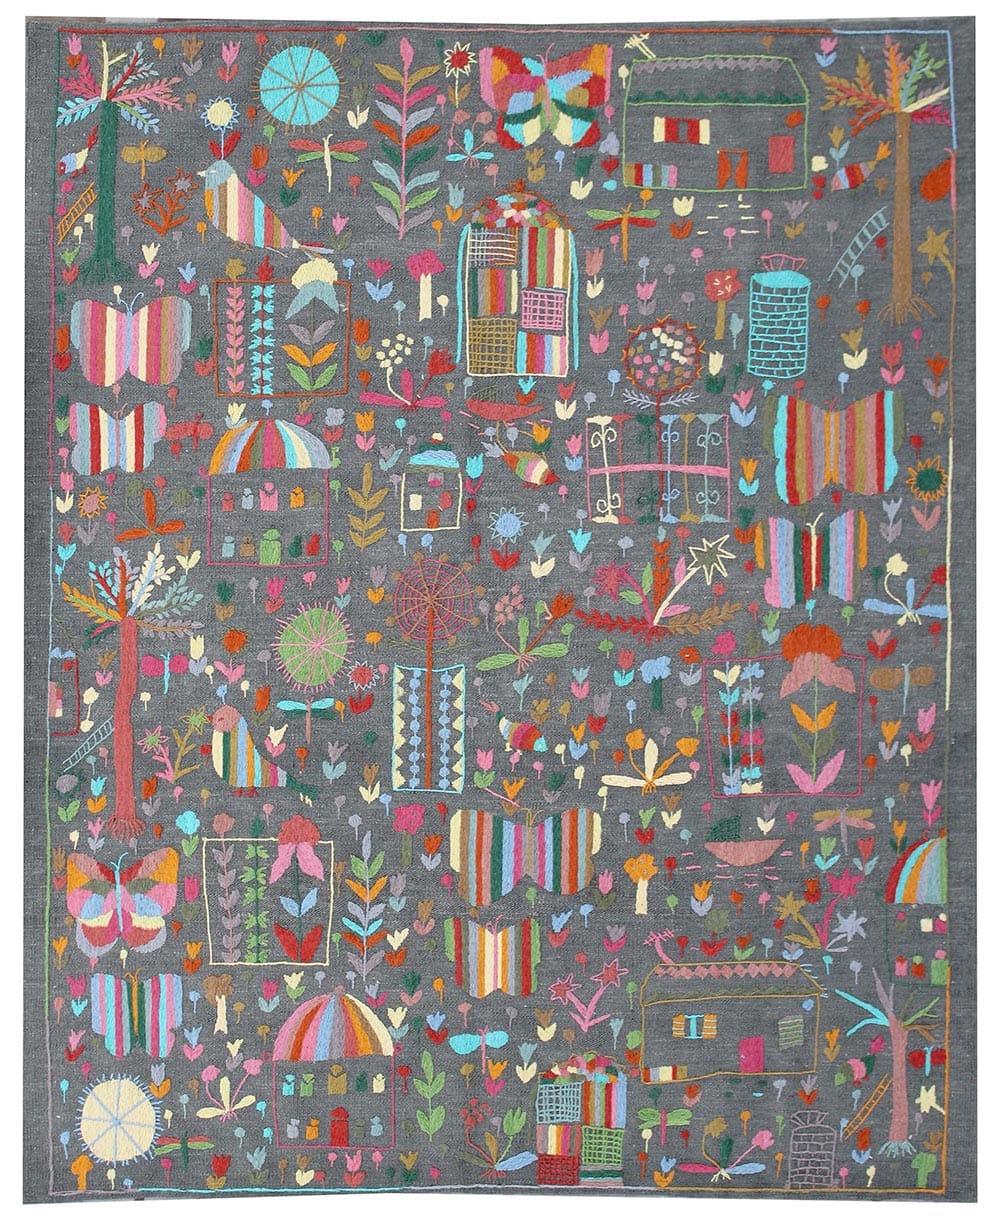 Kilım annodato a mano con disegni colorati di casette, fiori e farfalle, dimensioni 188x157 cm